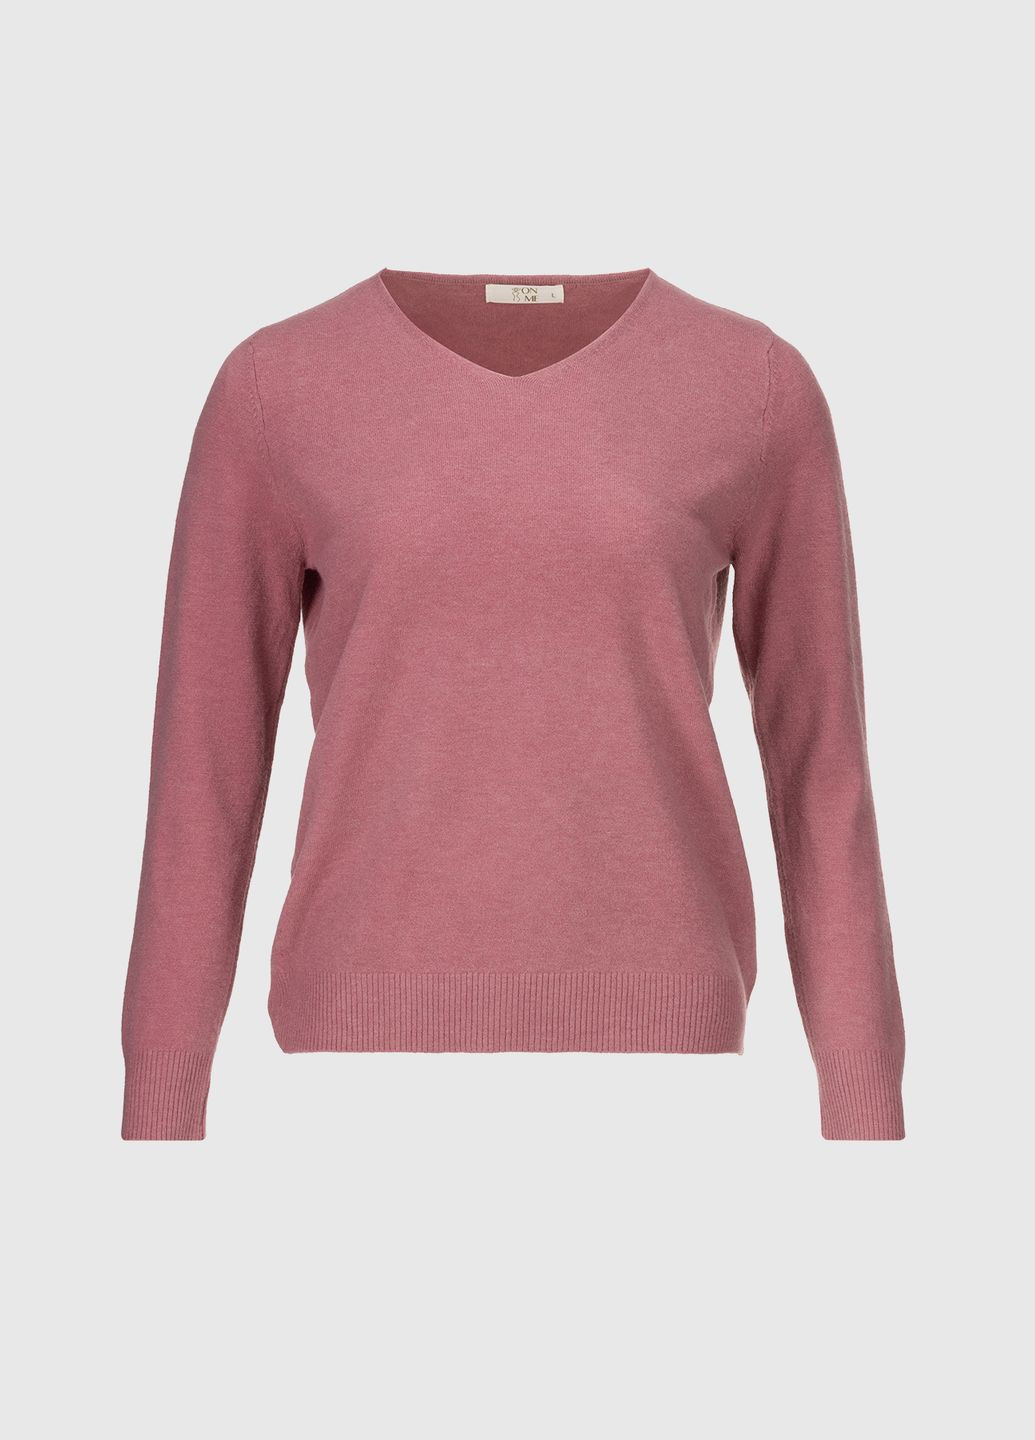 Малиновый демисезонный пуловер пуловер No Brand